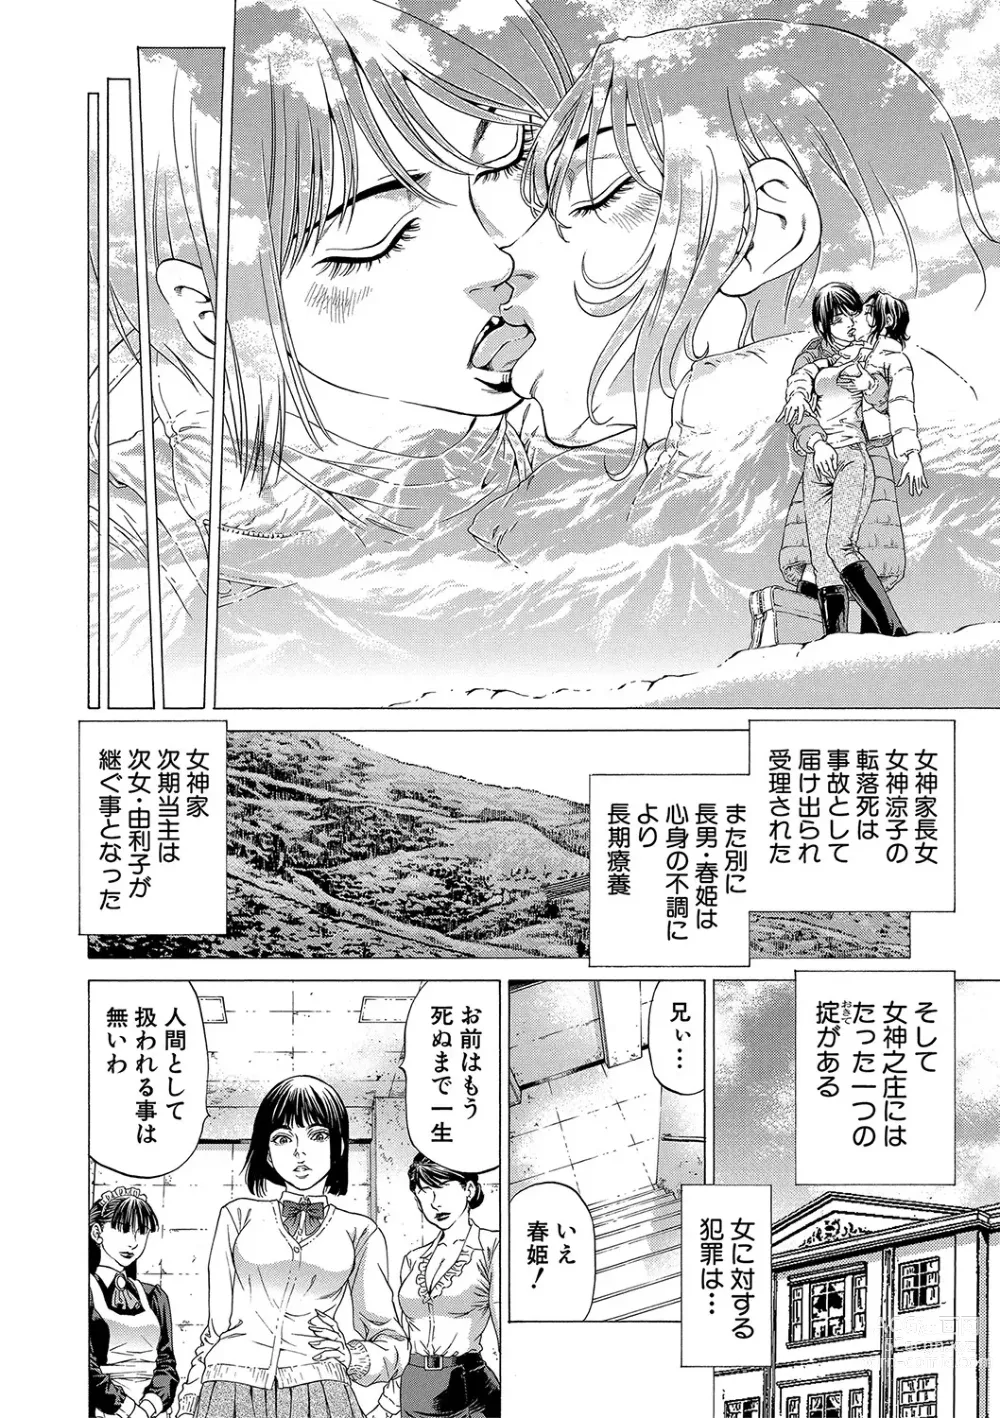 Page 181 of manga Shasei Suiri ~Megami no Yakata~